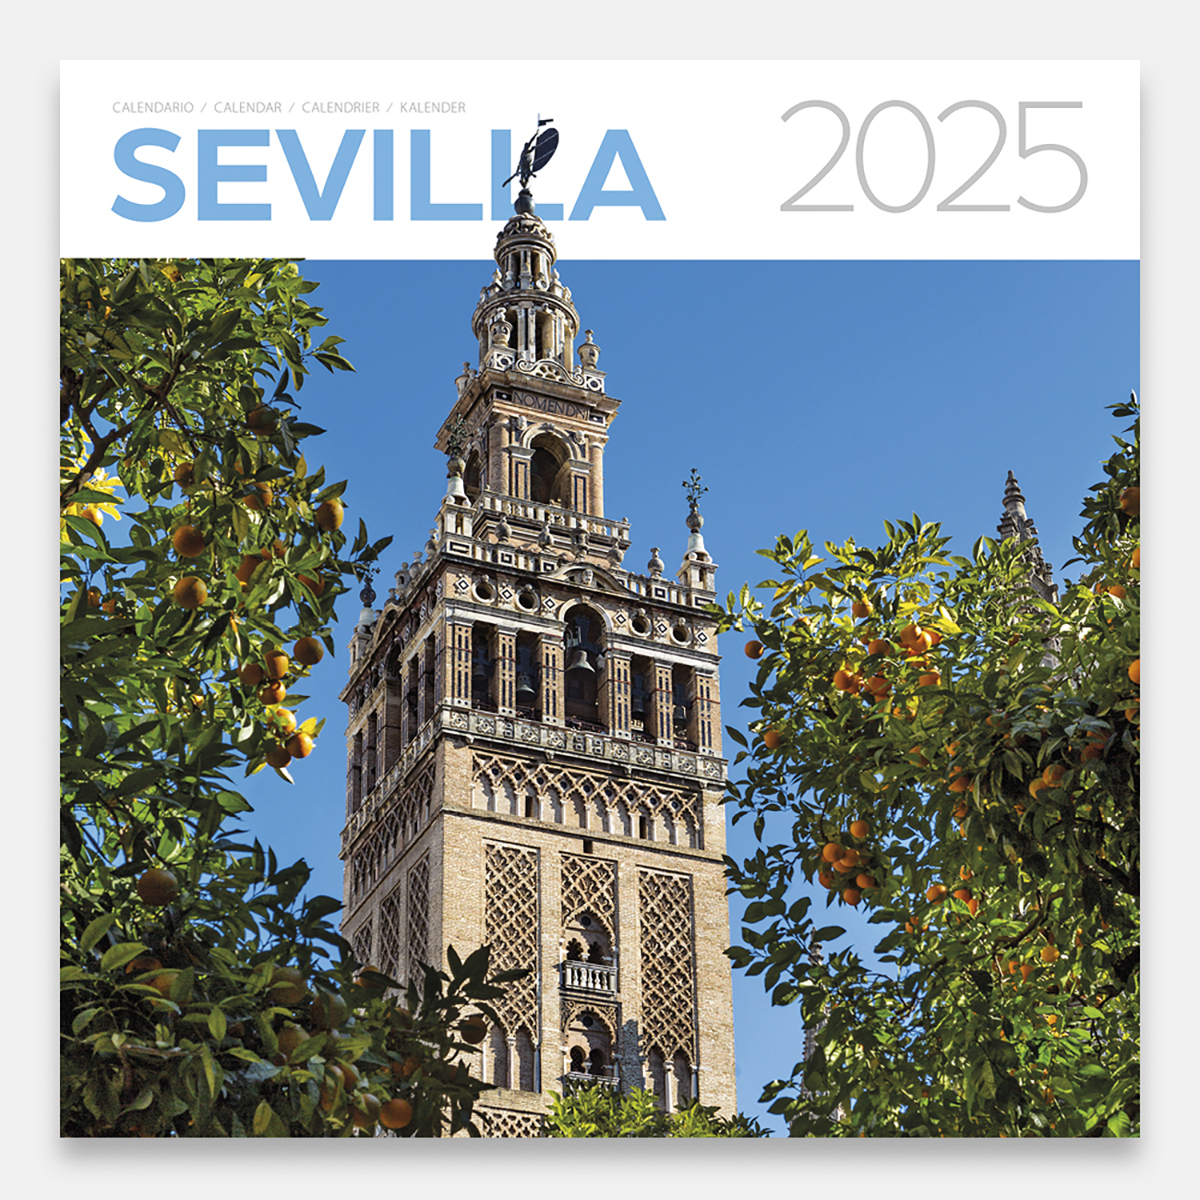 Calendari 2025 Sevilla 25sg calendario pared 2025 sevilla